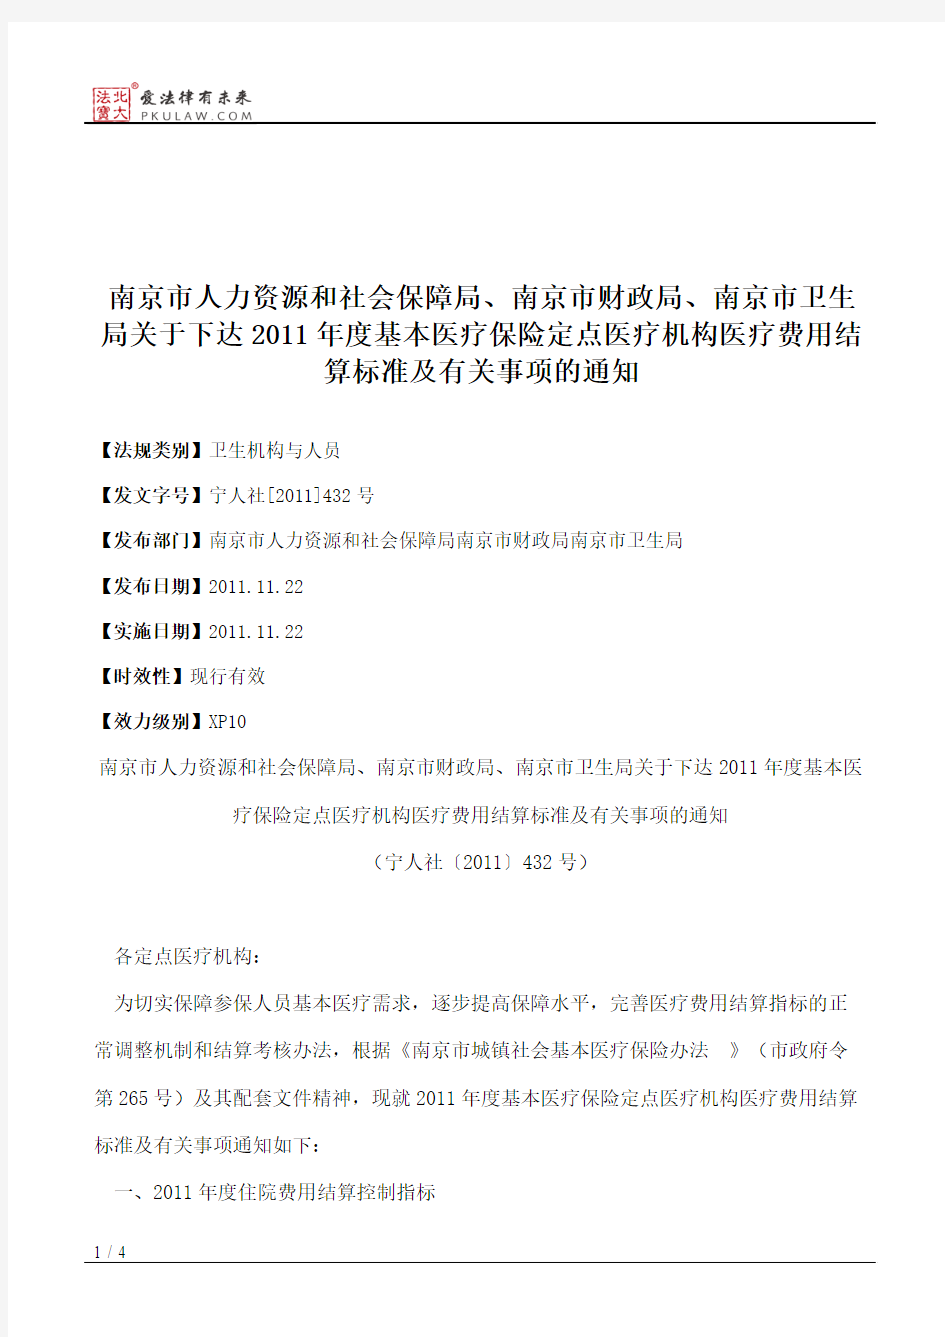 南京市人力资源和社会保障局、南京市财政局、南京市卫生局关于下